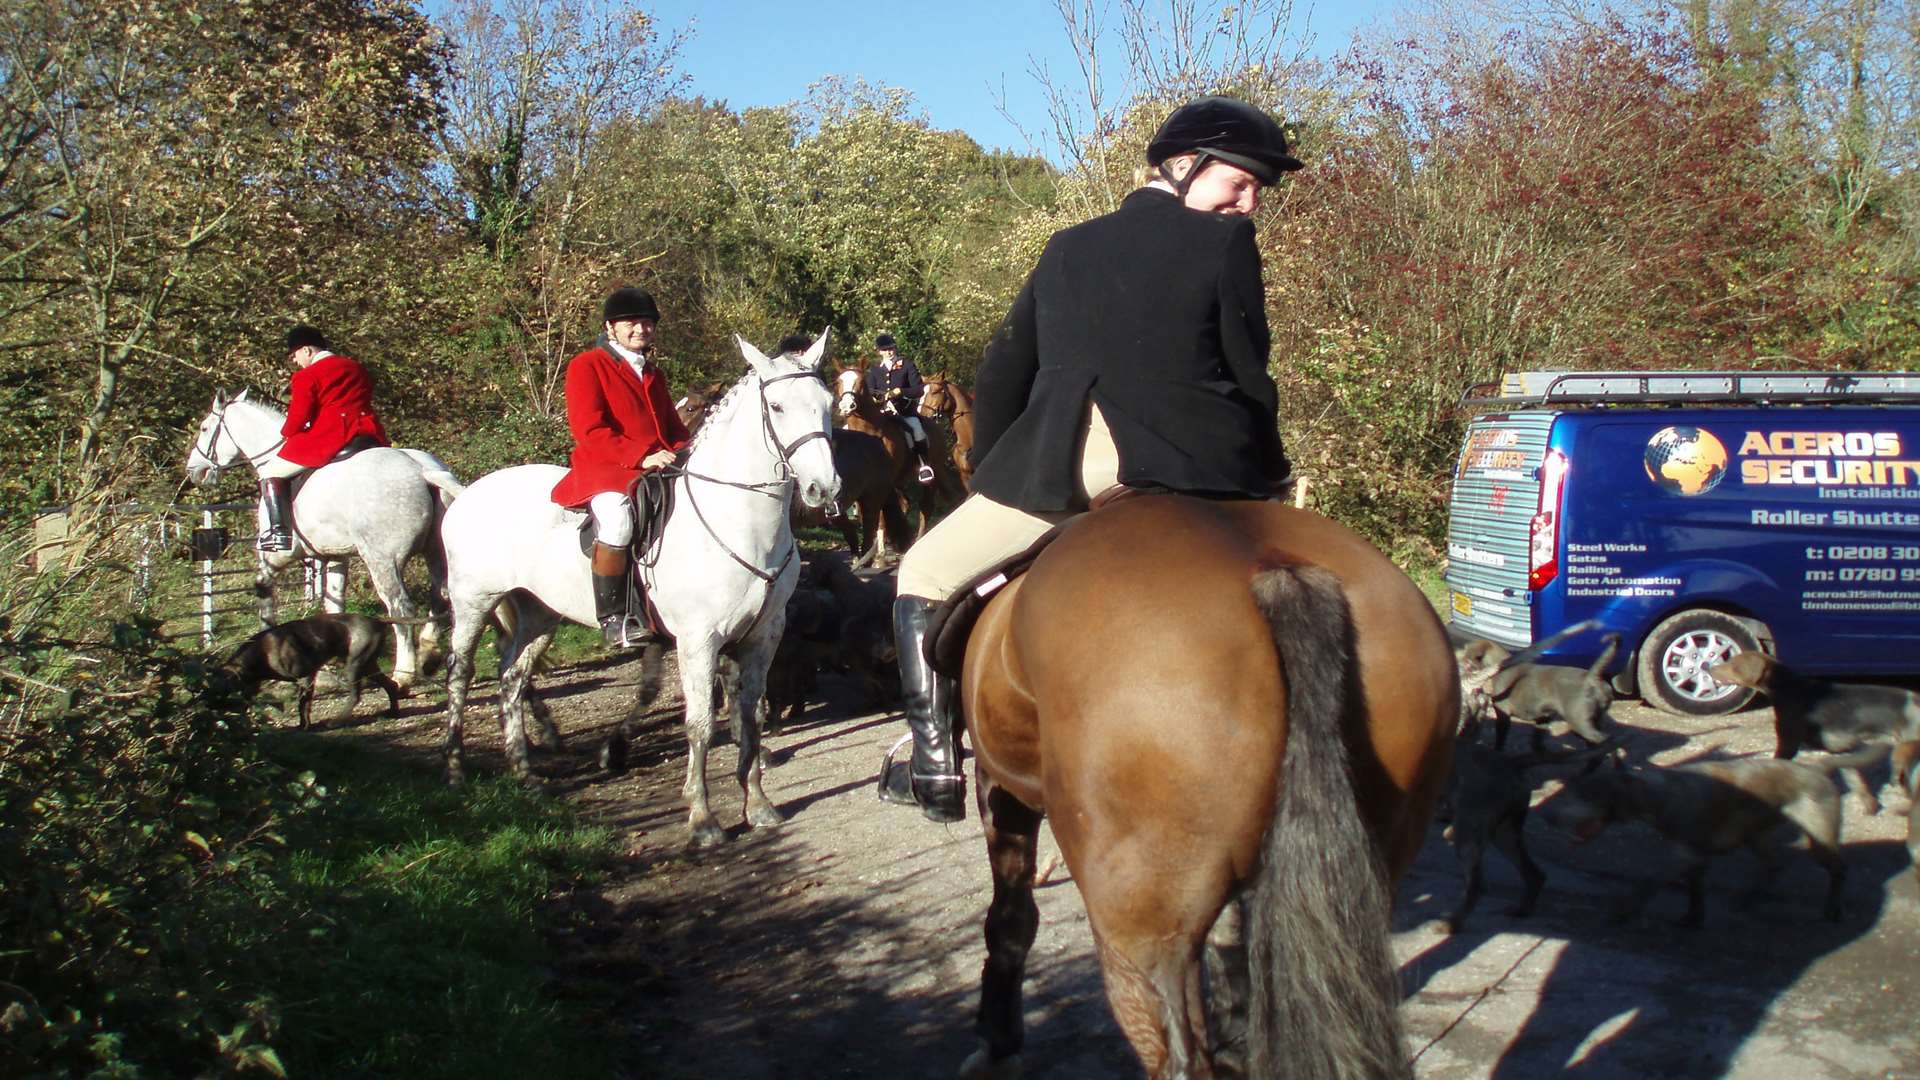 Hunt staff wear red jackets, while field (riders) wear black.